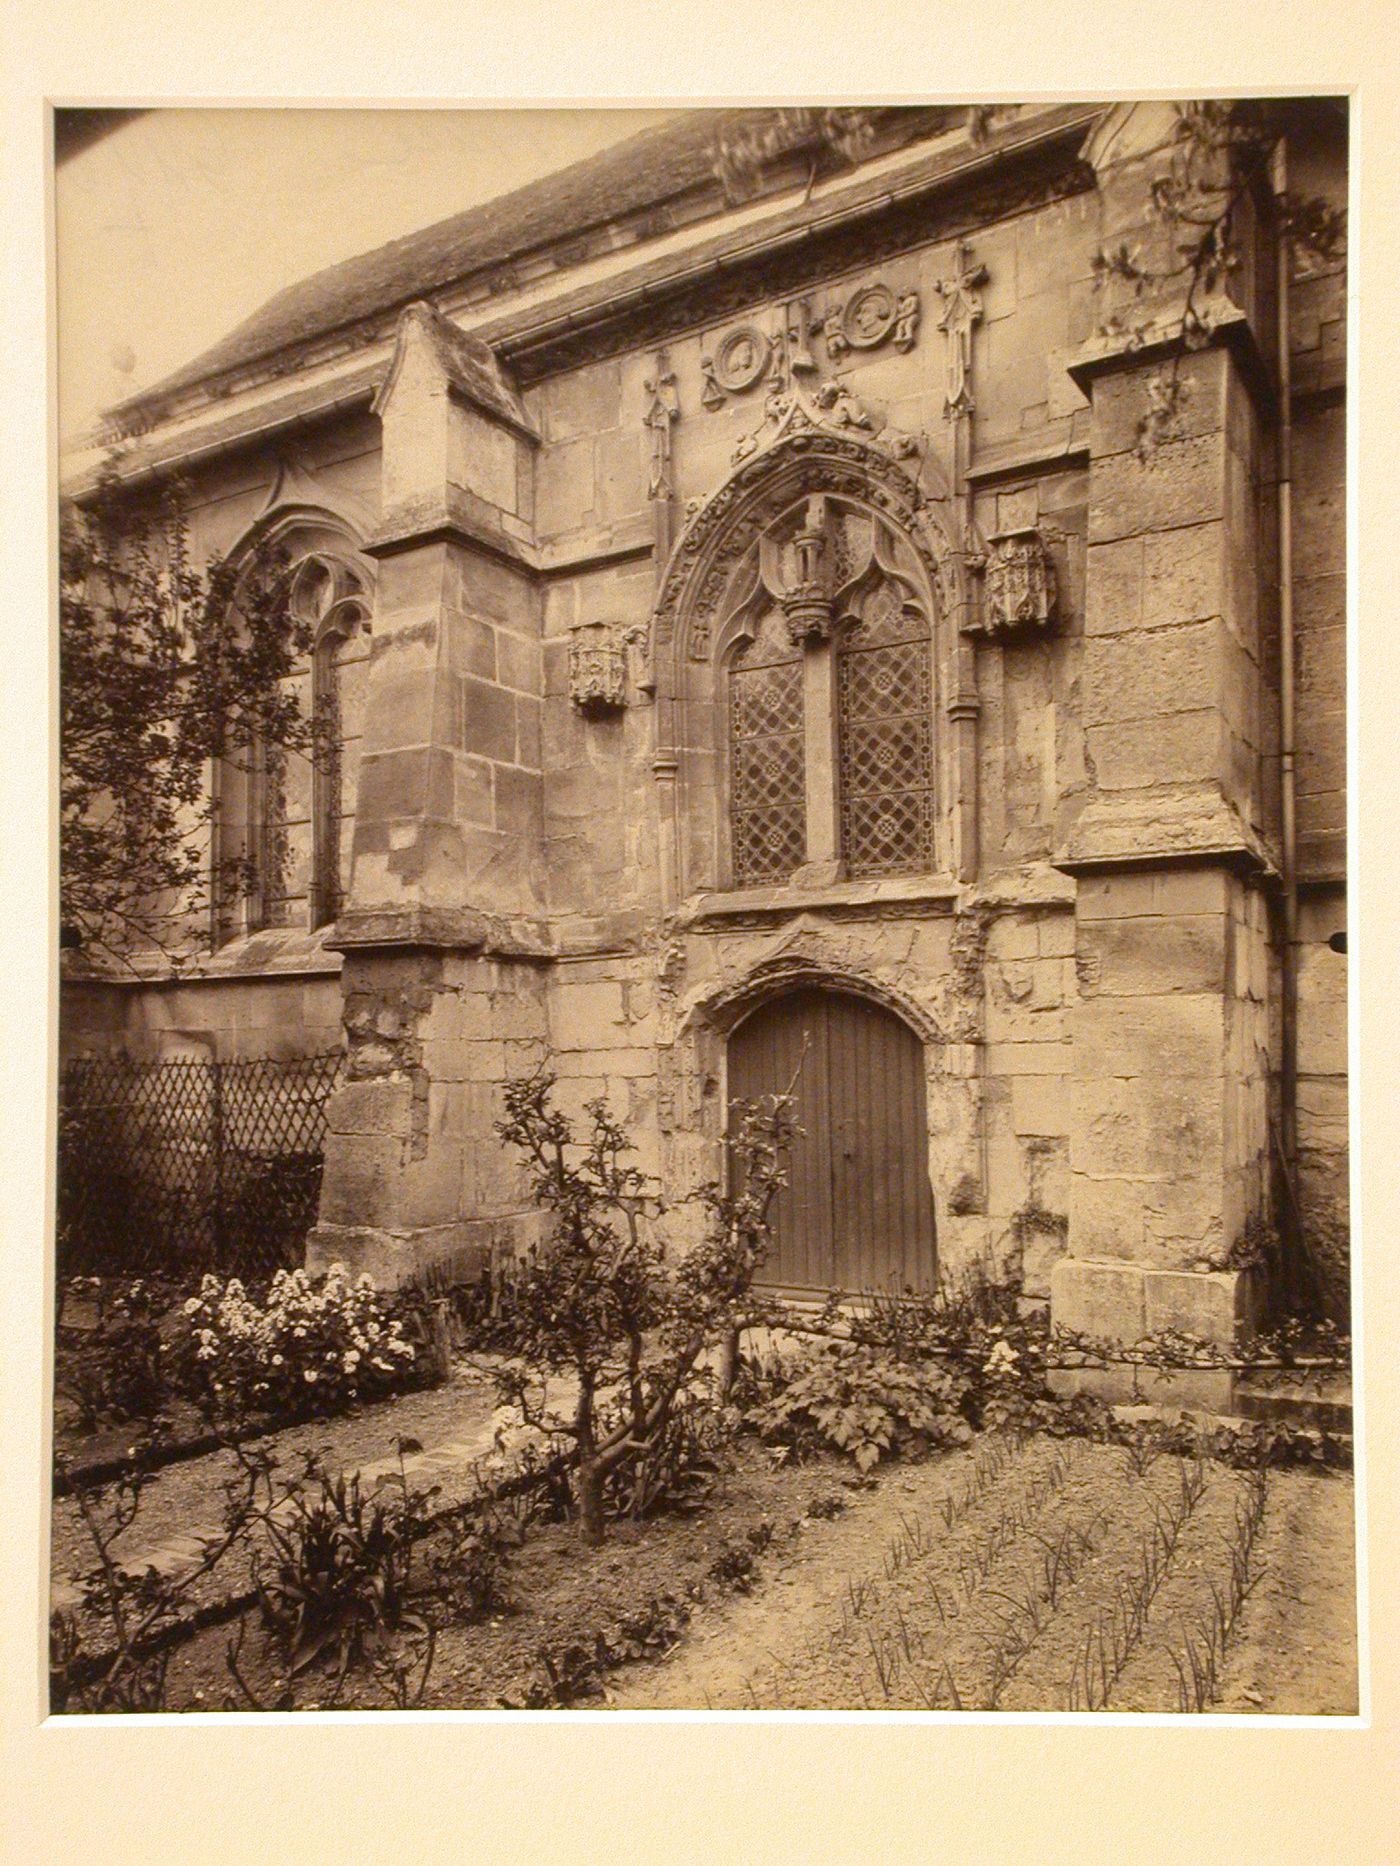 Detail of exterior of nave, 2 bays, Église de France: detail of exterior of nave, 2 bays, Église de Sarcelle, St. Brice, Ile de France, Paris, France